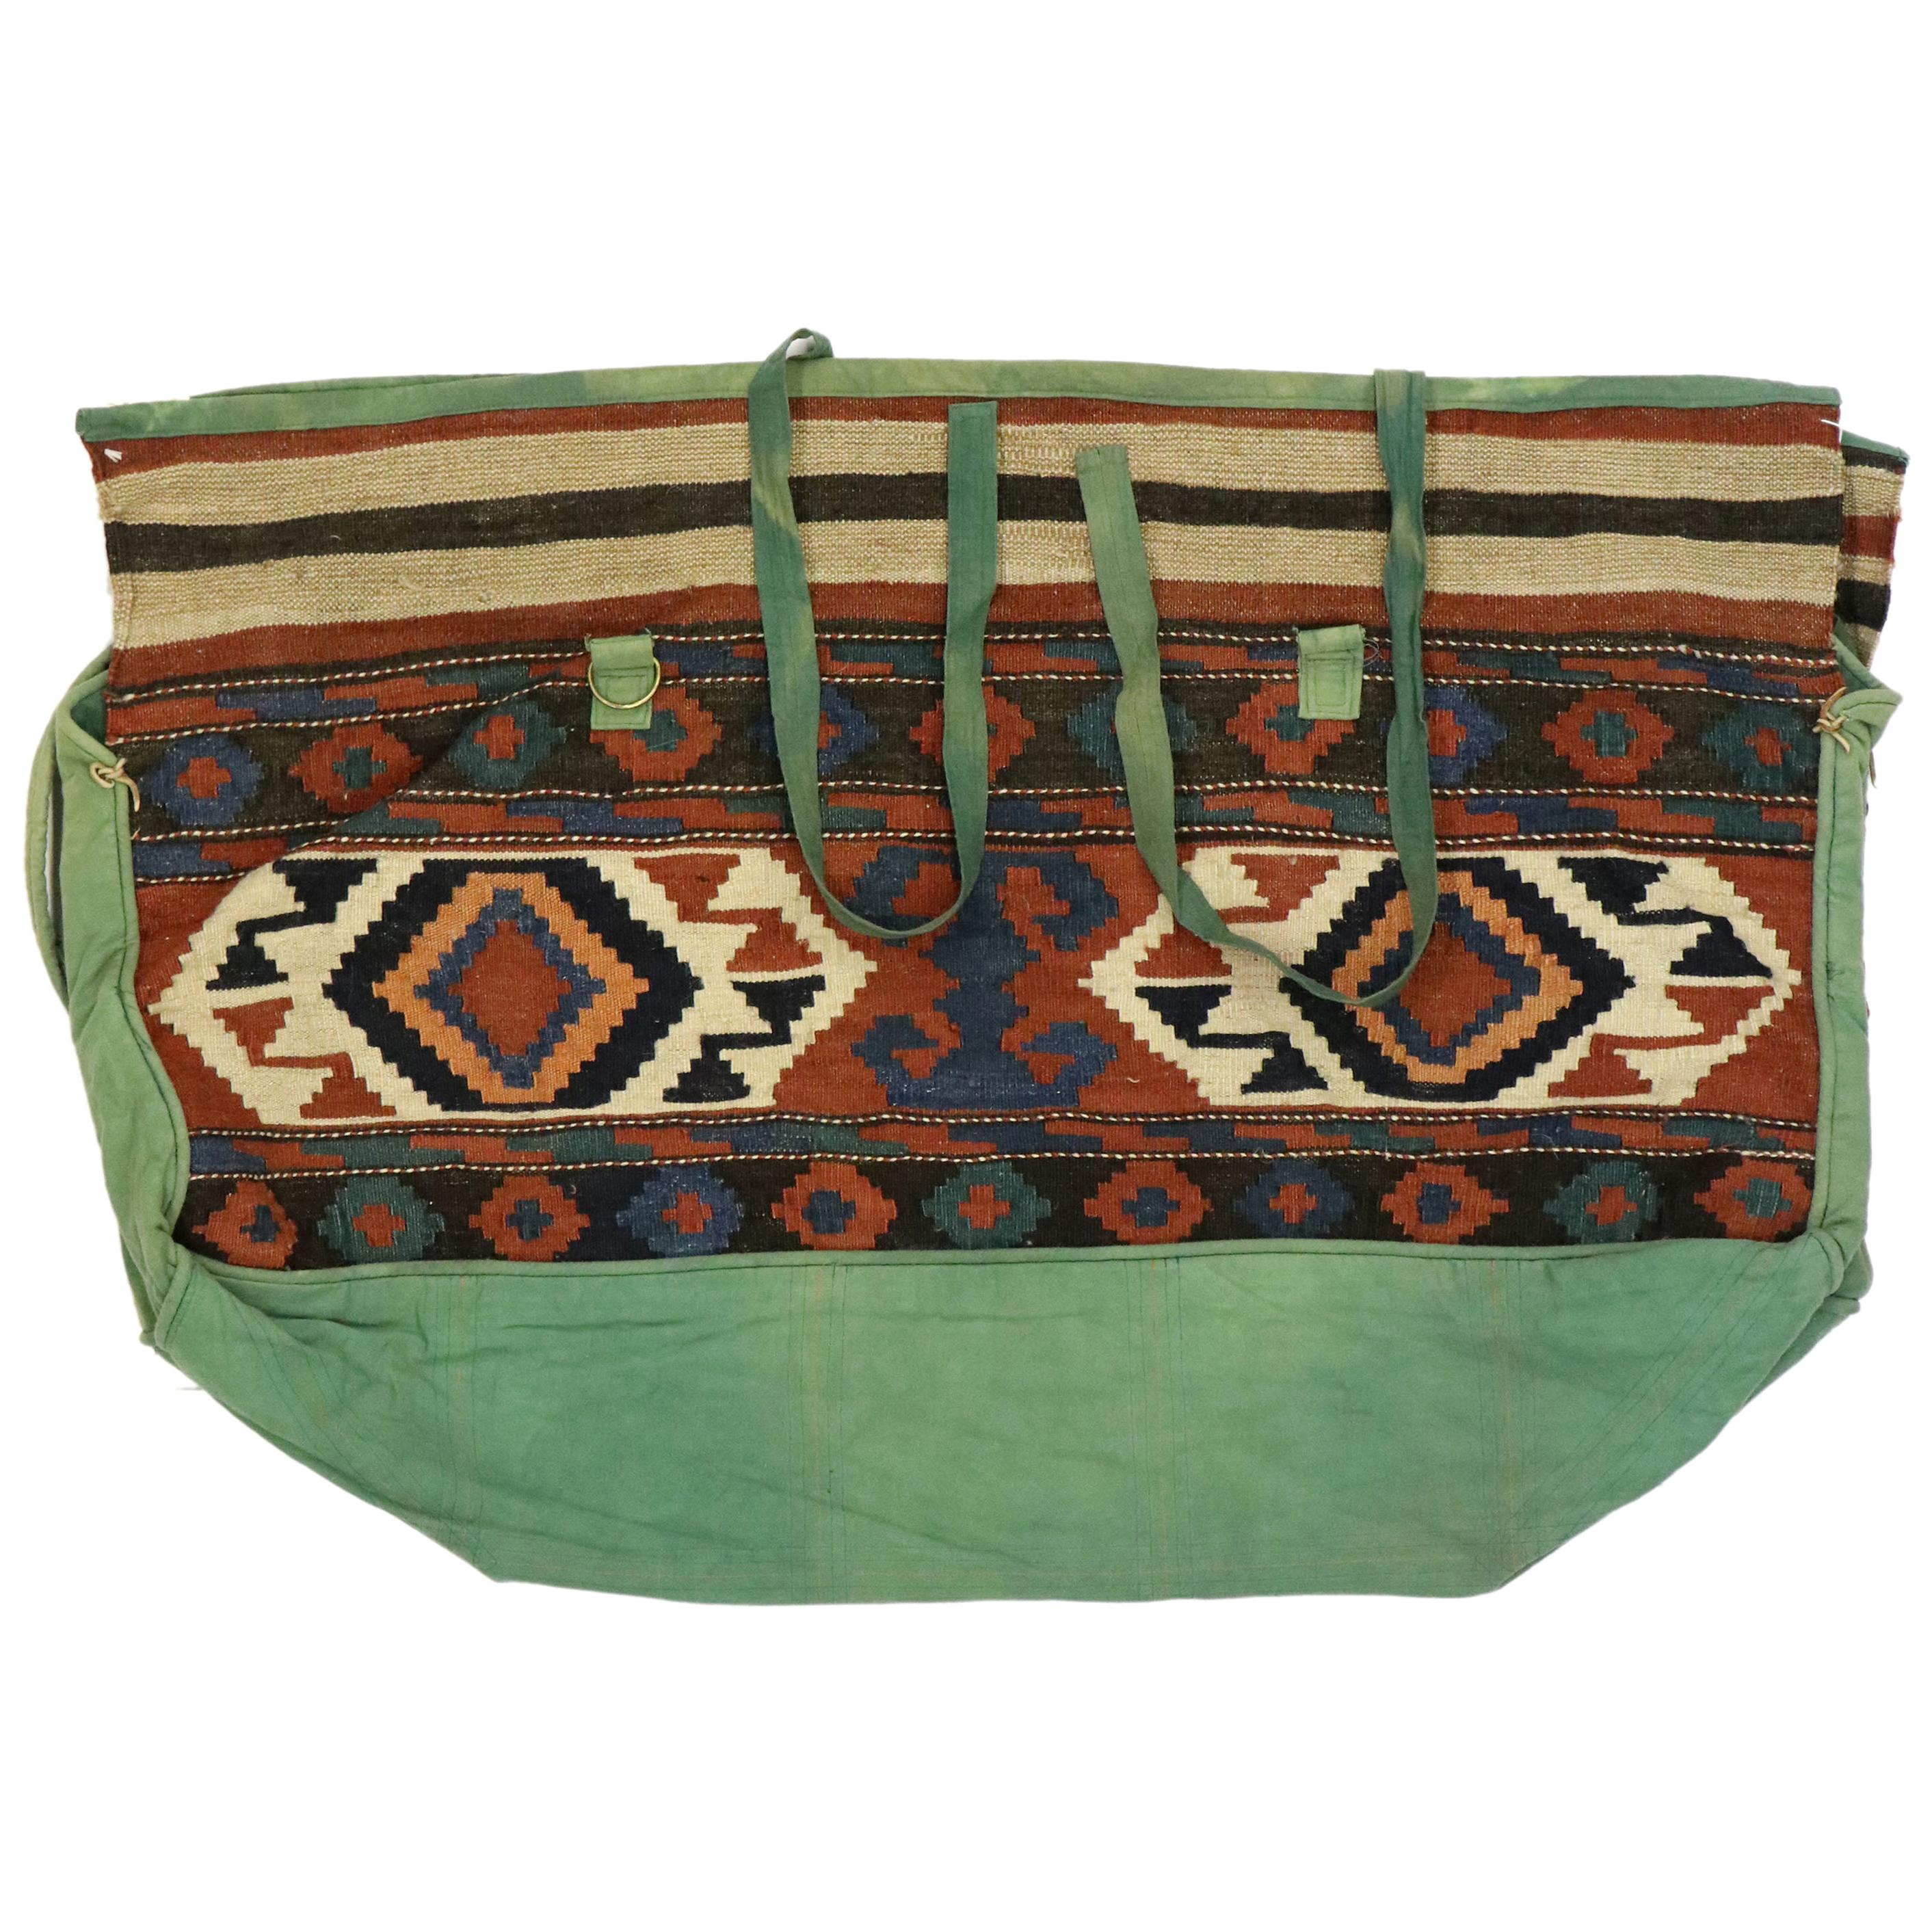 Vintage Kilim handbag / handmade kilim bag FREE SHIPPING